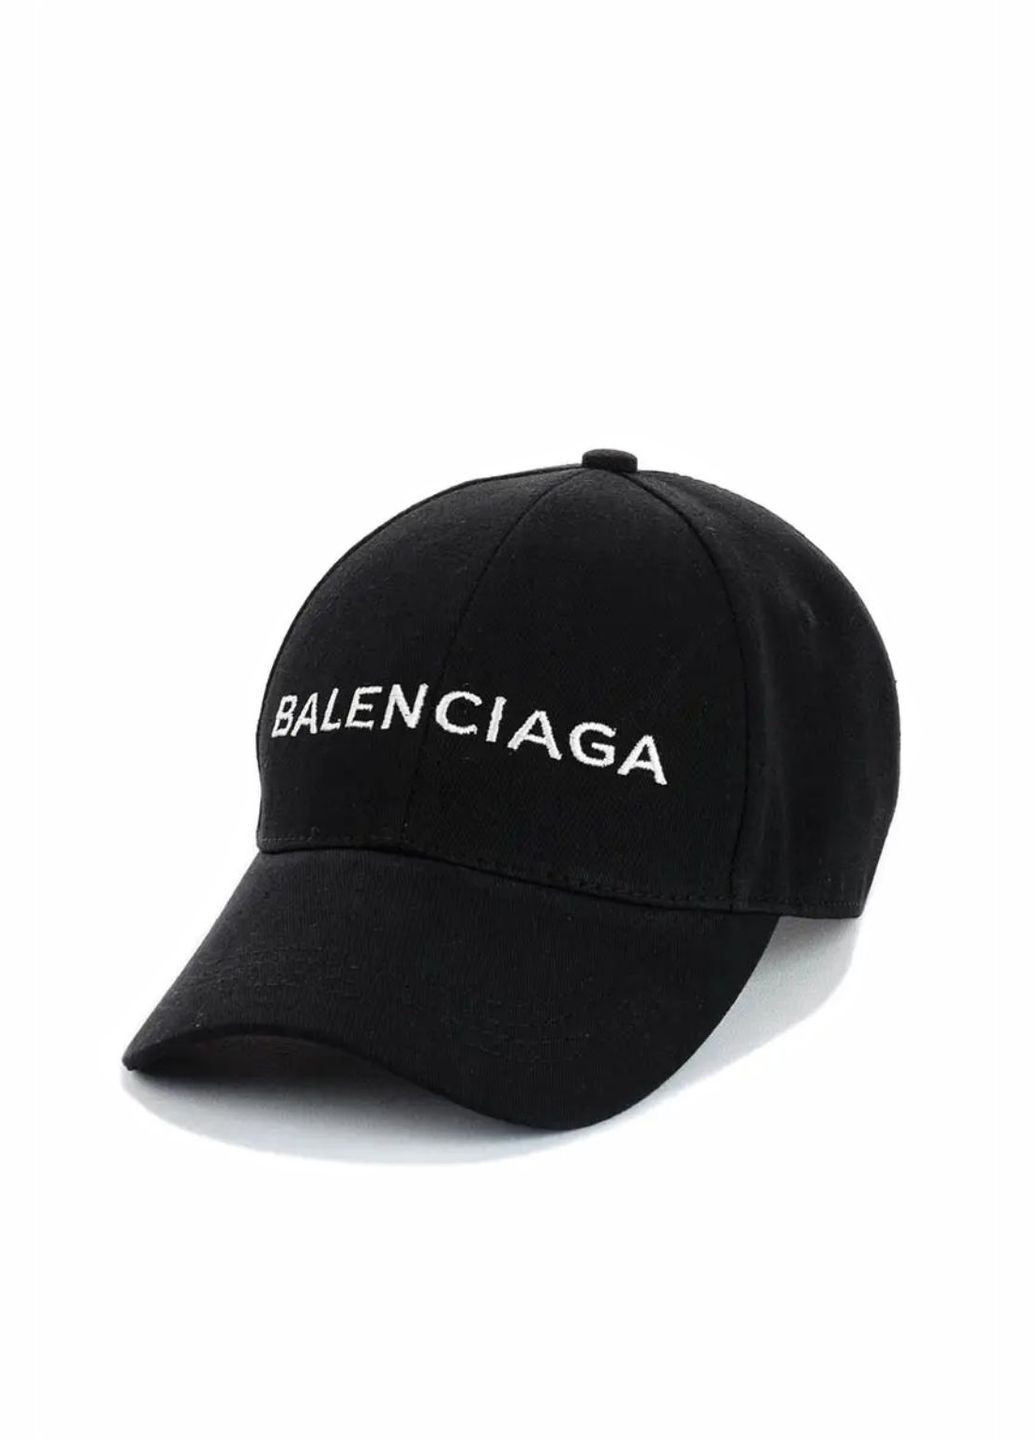 Кепка молодіжна Balenciaga / Баленсиага S/M No Brand кепка унісекс (280928960)